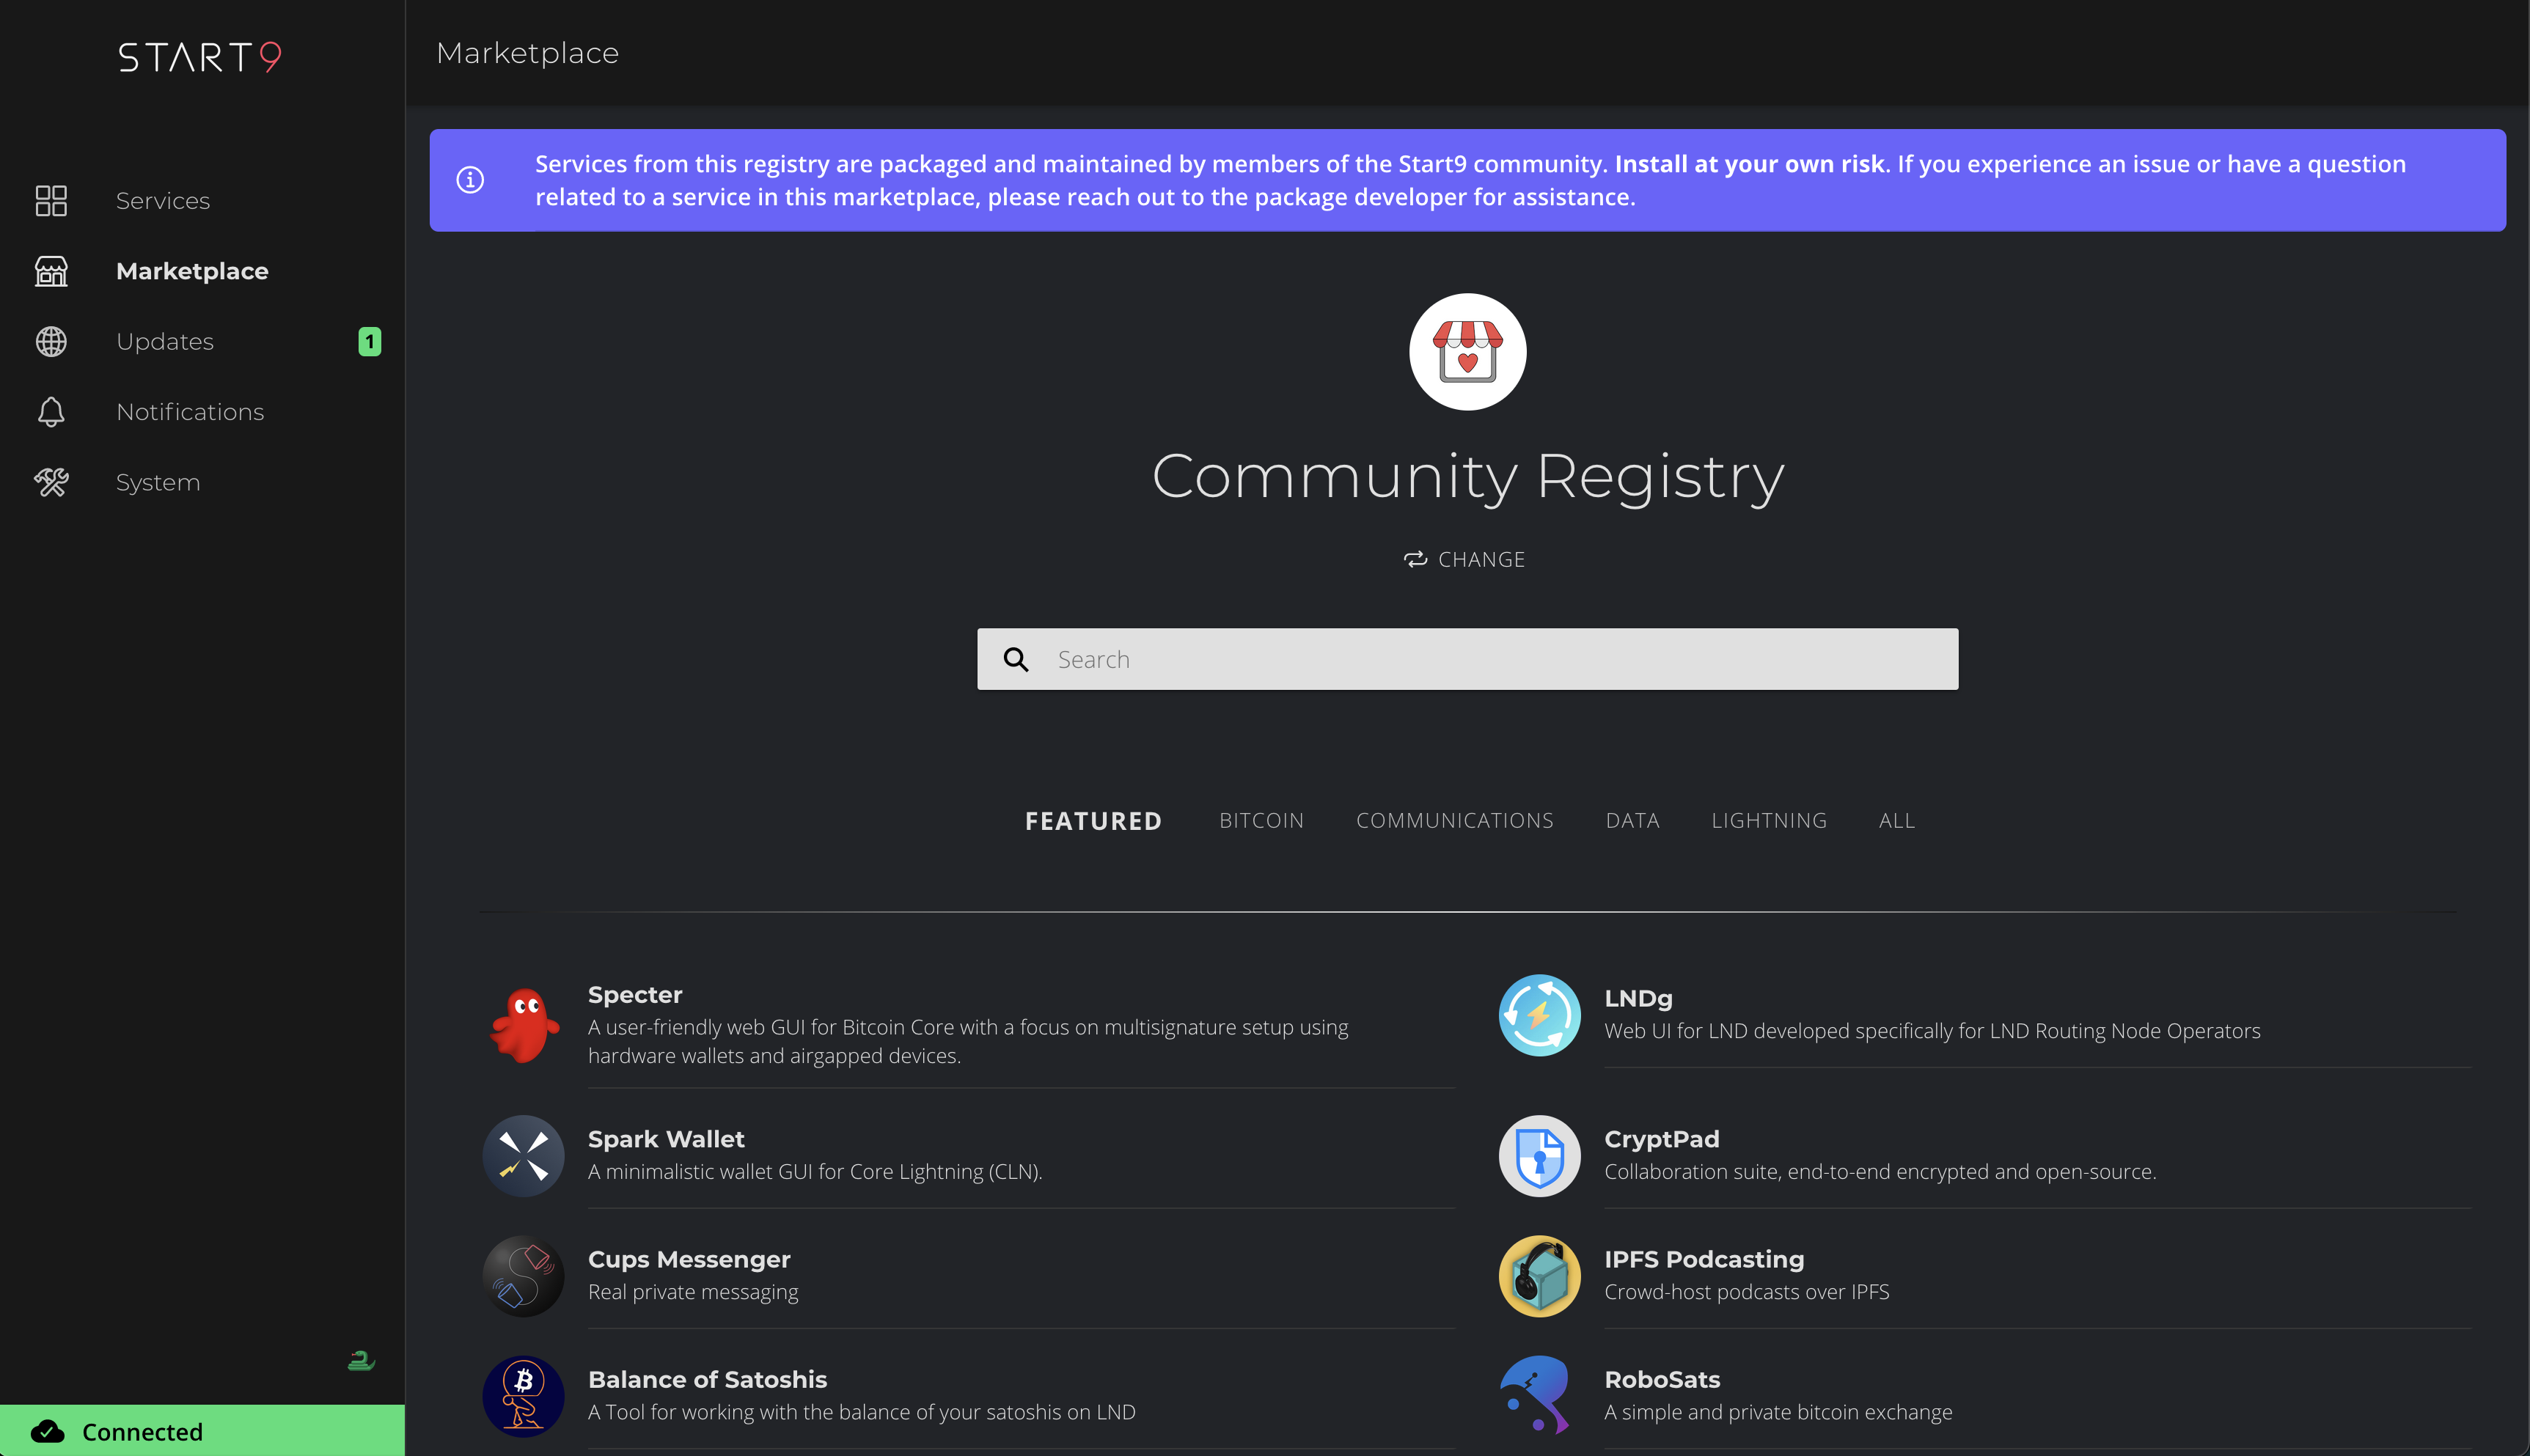 StartOS Community Registry